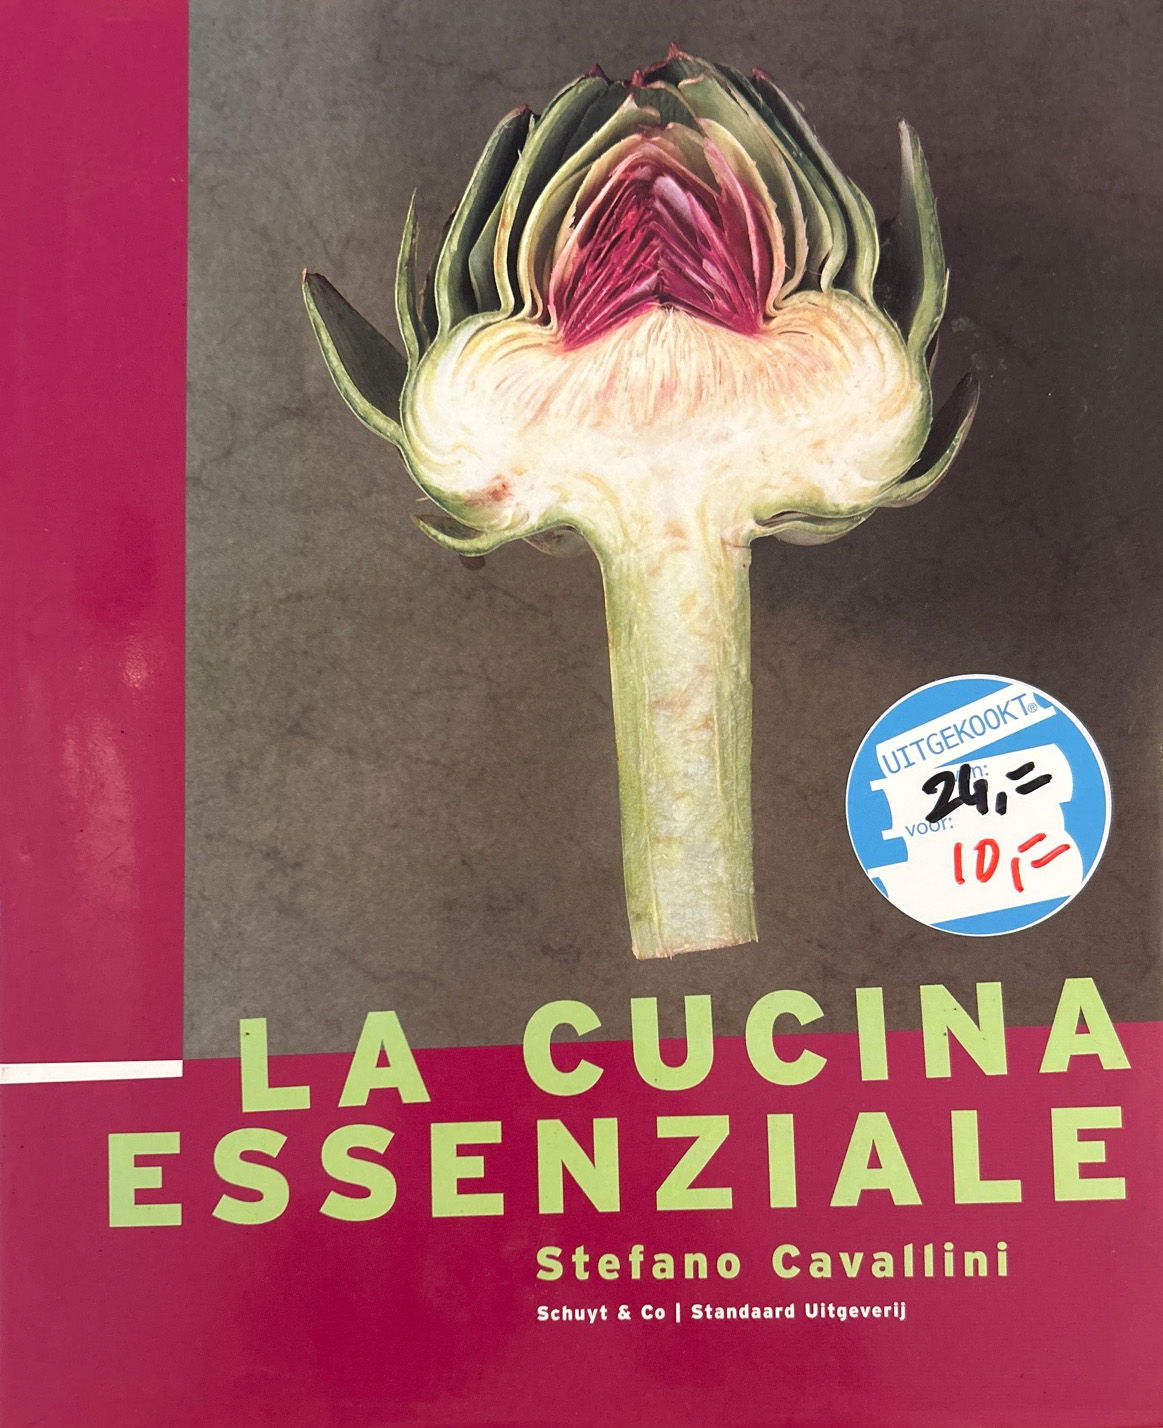 La cucina essenziale – Stefano Cavallini